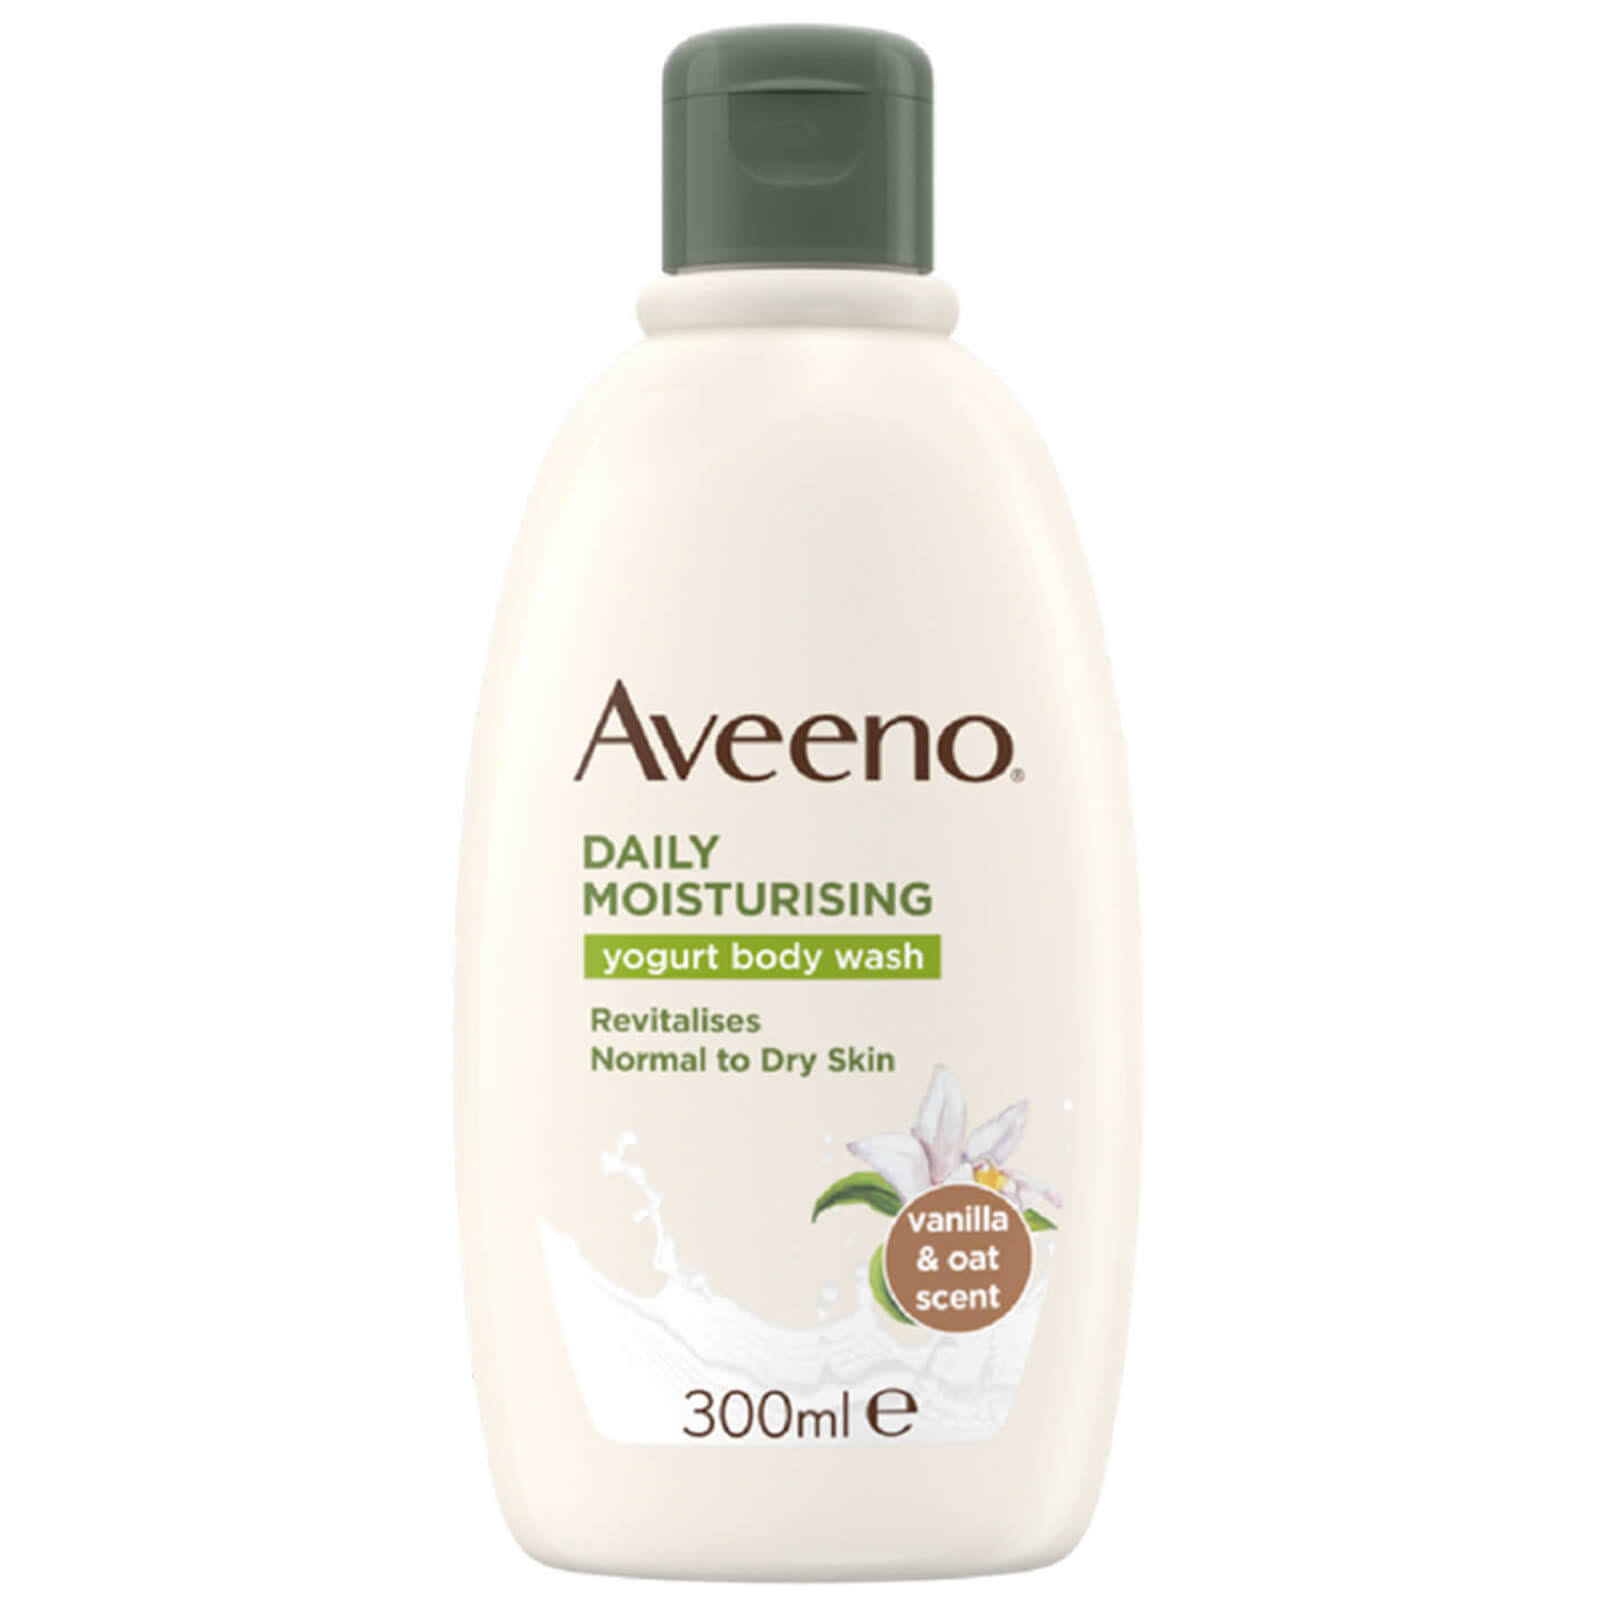 Aveeno Daily Moisturising Yogurt Body Wash - Vanilla and Oat, 300ml